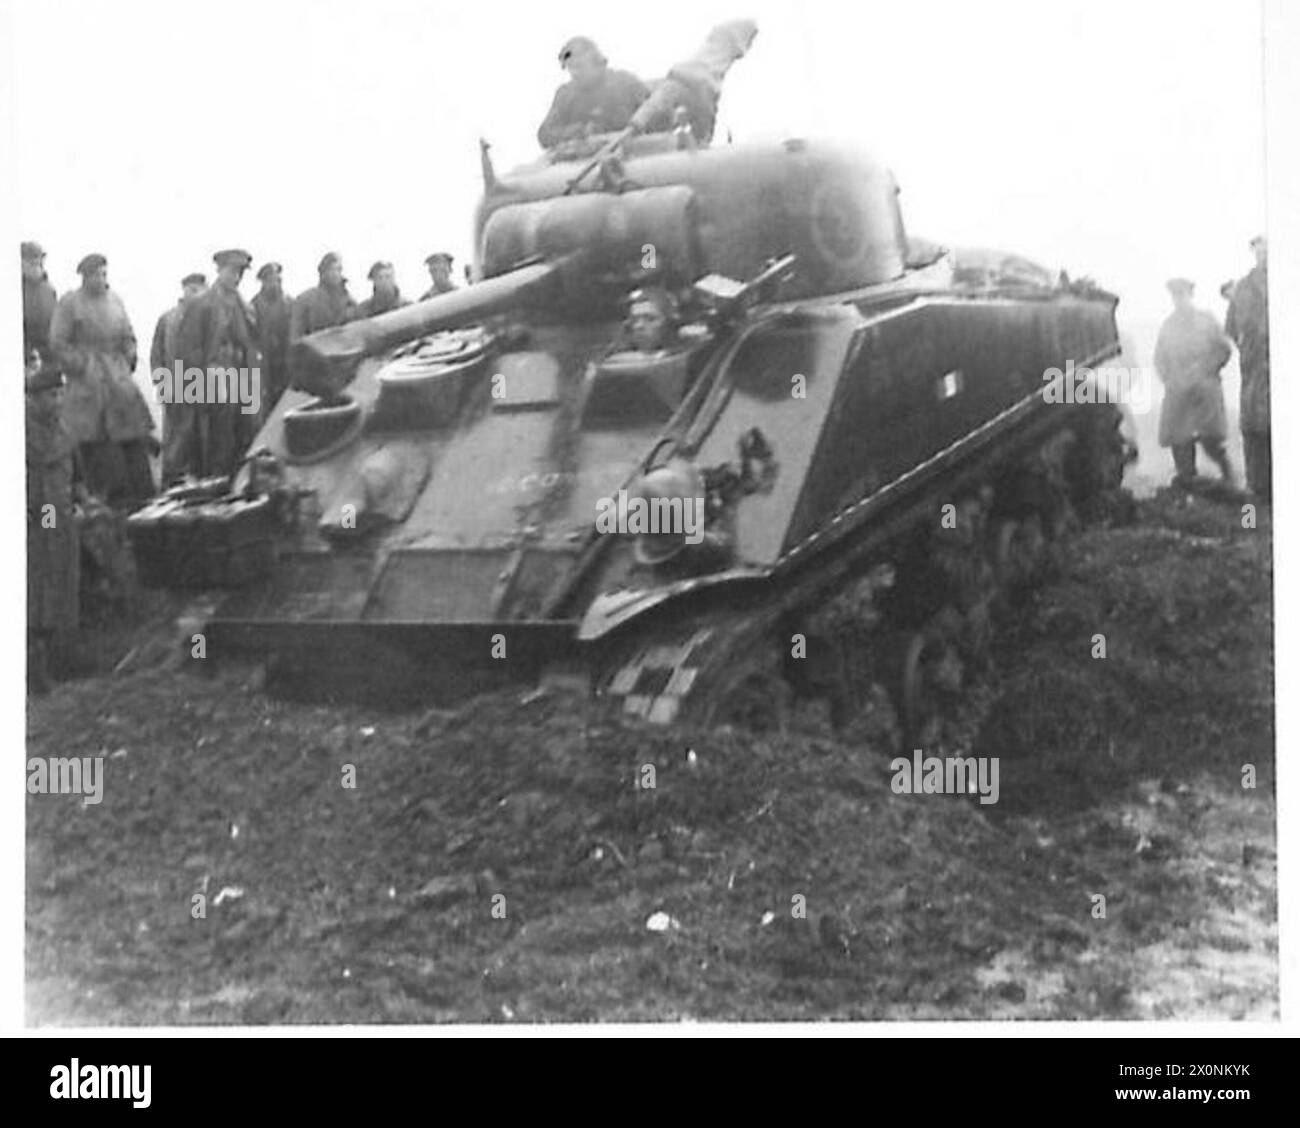 ITALIE : CINQUIÈME ARMÉE - Un char Sherman de la 23e Brigade blindée donnant une démonstration aux officiers et sous-officiers de la Brigade le char est vu opérant sur terrain meuble. Négatif photographique, Armée britannique Banque D'Images